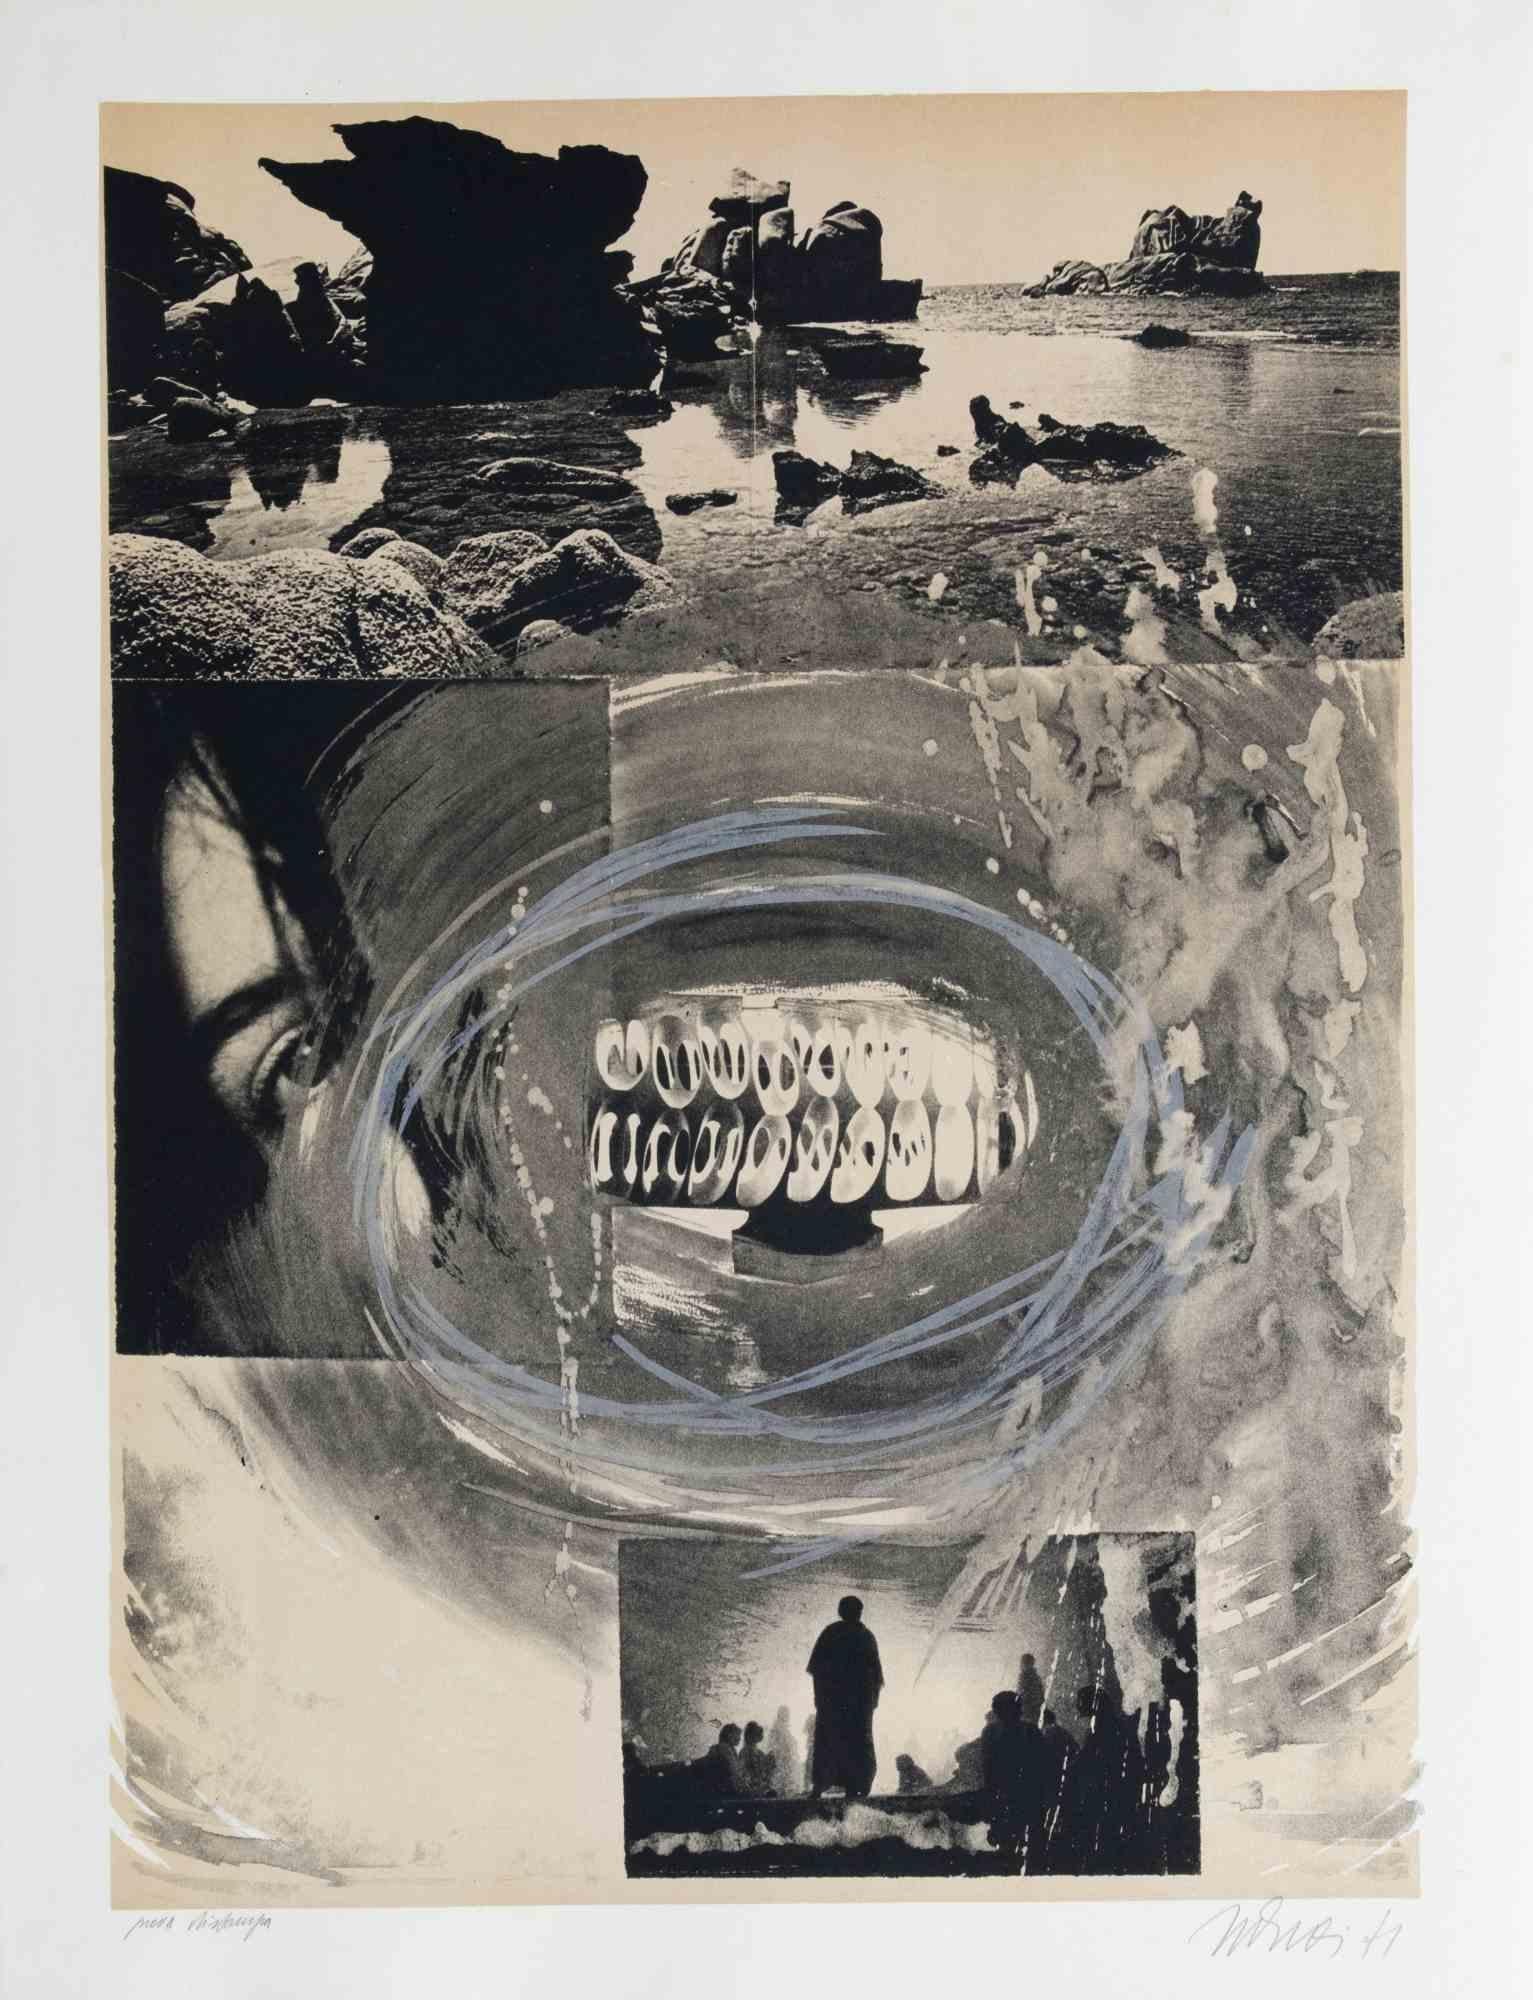 La Bouche du temps est une œuvre d'art contemporain réalisée par Nani Tedeschi en 1971.

Lithographie en noir et blanc.

Signé à la main et daté dans la marge inférieure.

Épreuve d'artiste